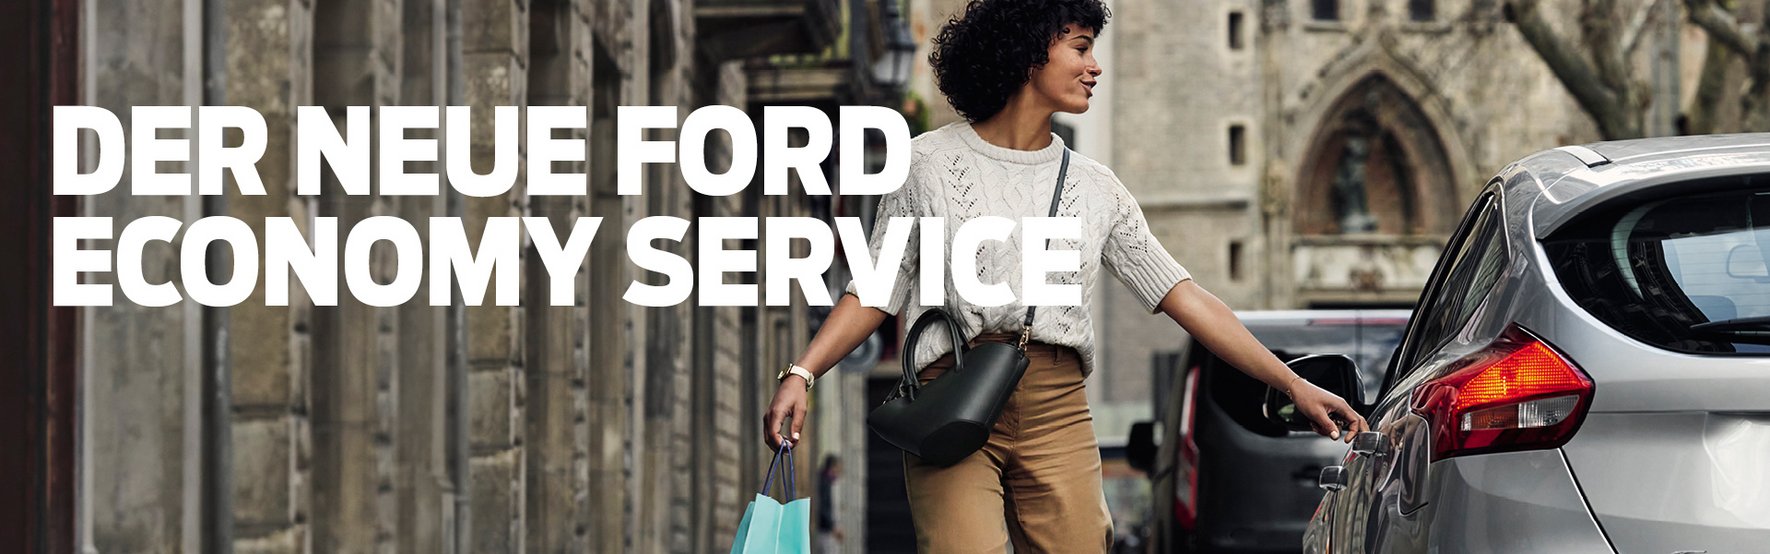 Ford Economy Service | Für privat genutzte Ford Pkw-Modelle* ab 5 Jahren